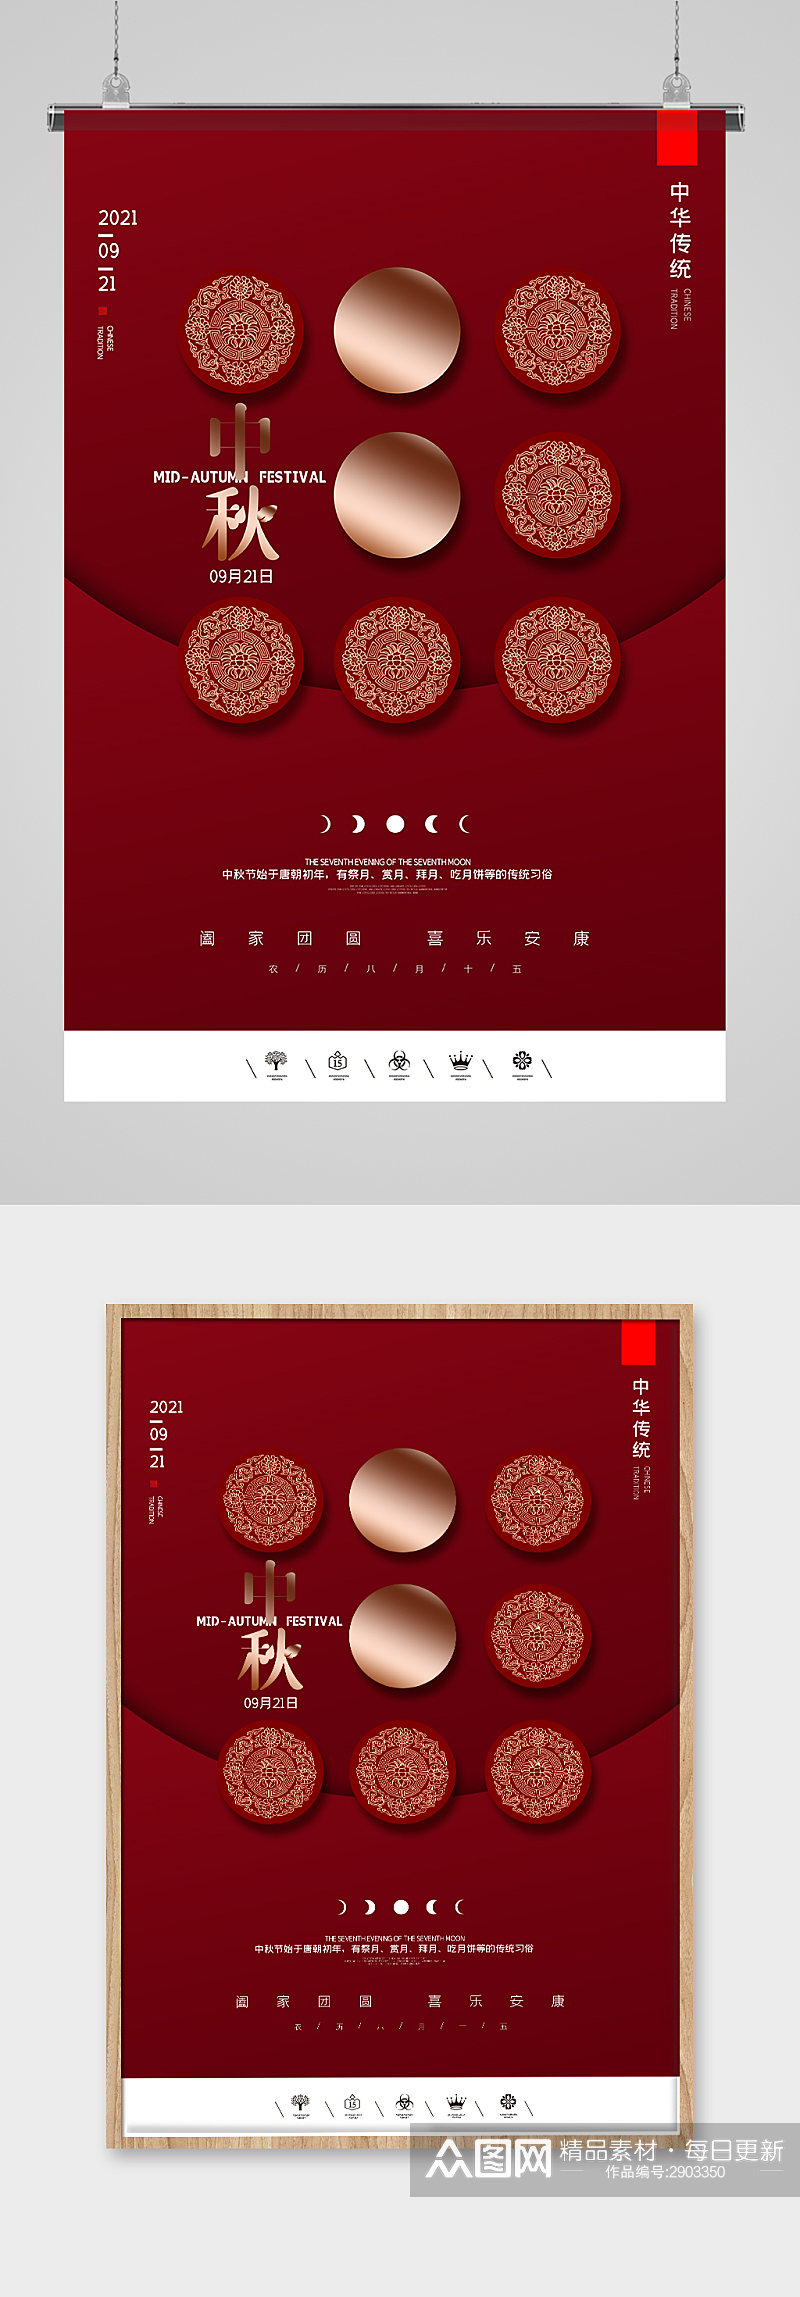 高端红色奢华中秋节海报设计素材